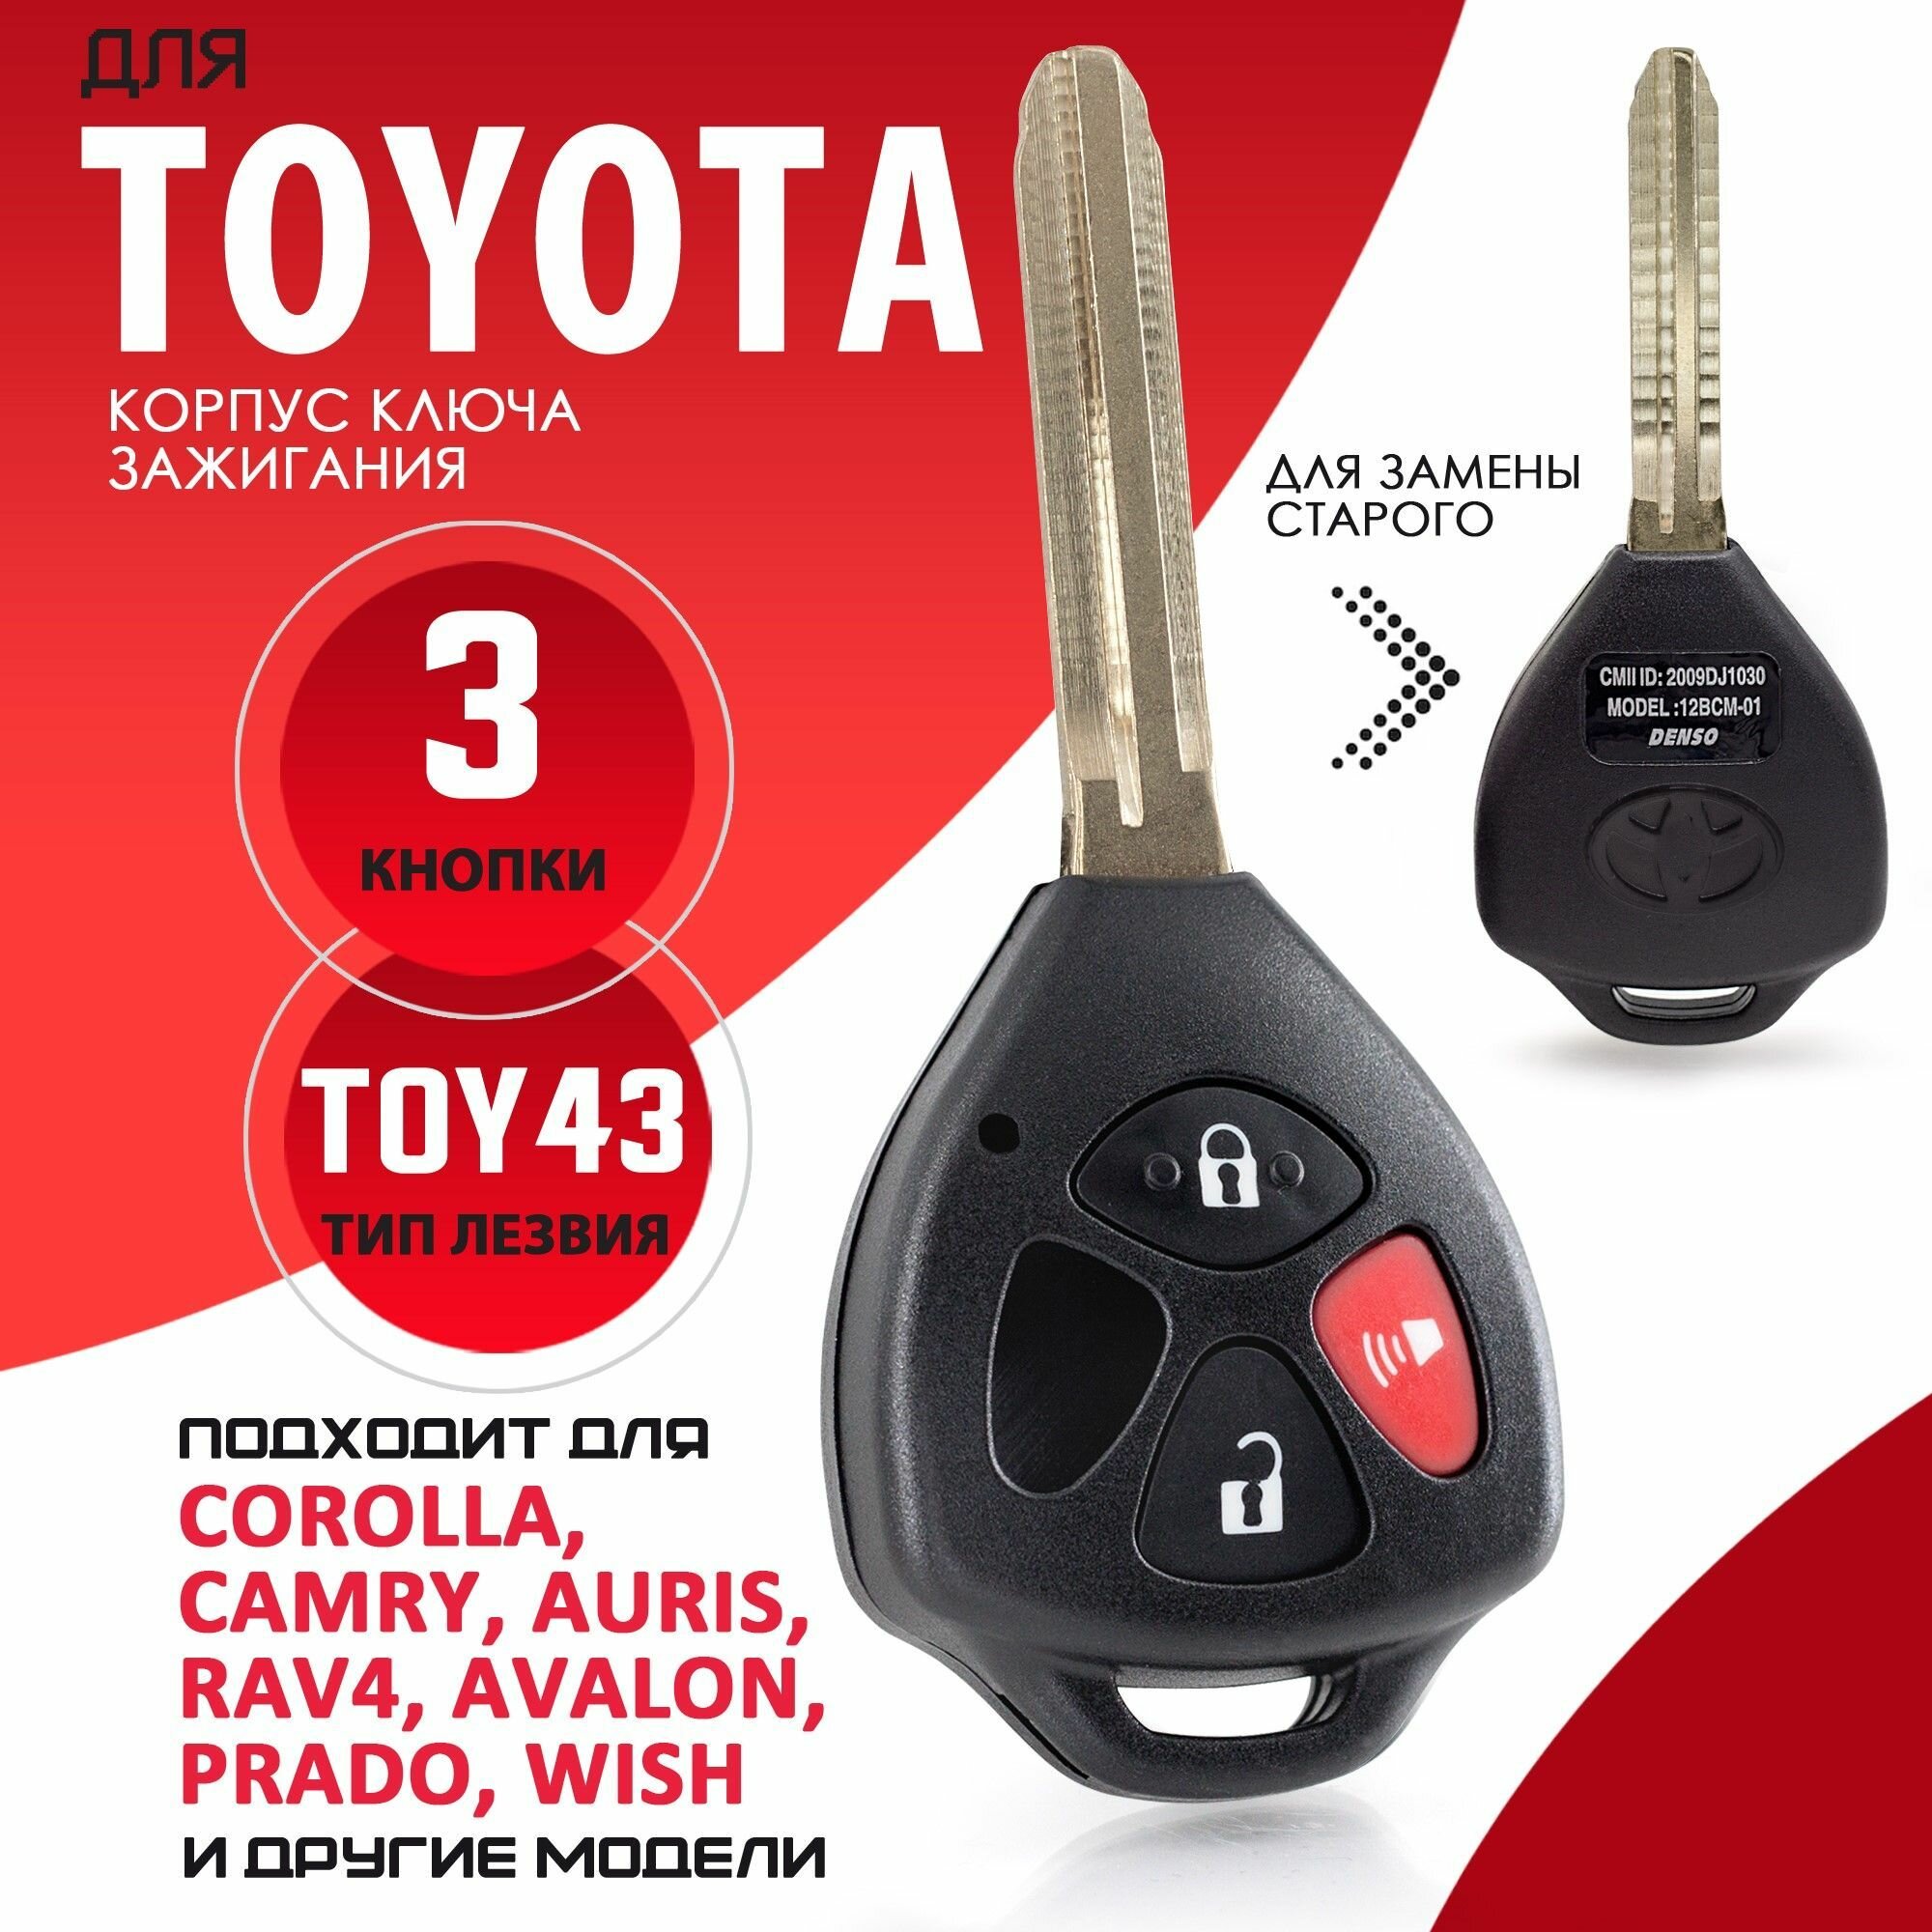 Корпус ключа зажигания для Toyota / Тойота лезвие TOY43 - 3 кнопки / Брелок автомобильный